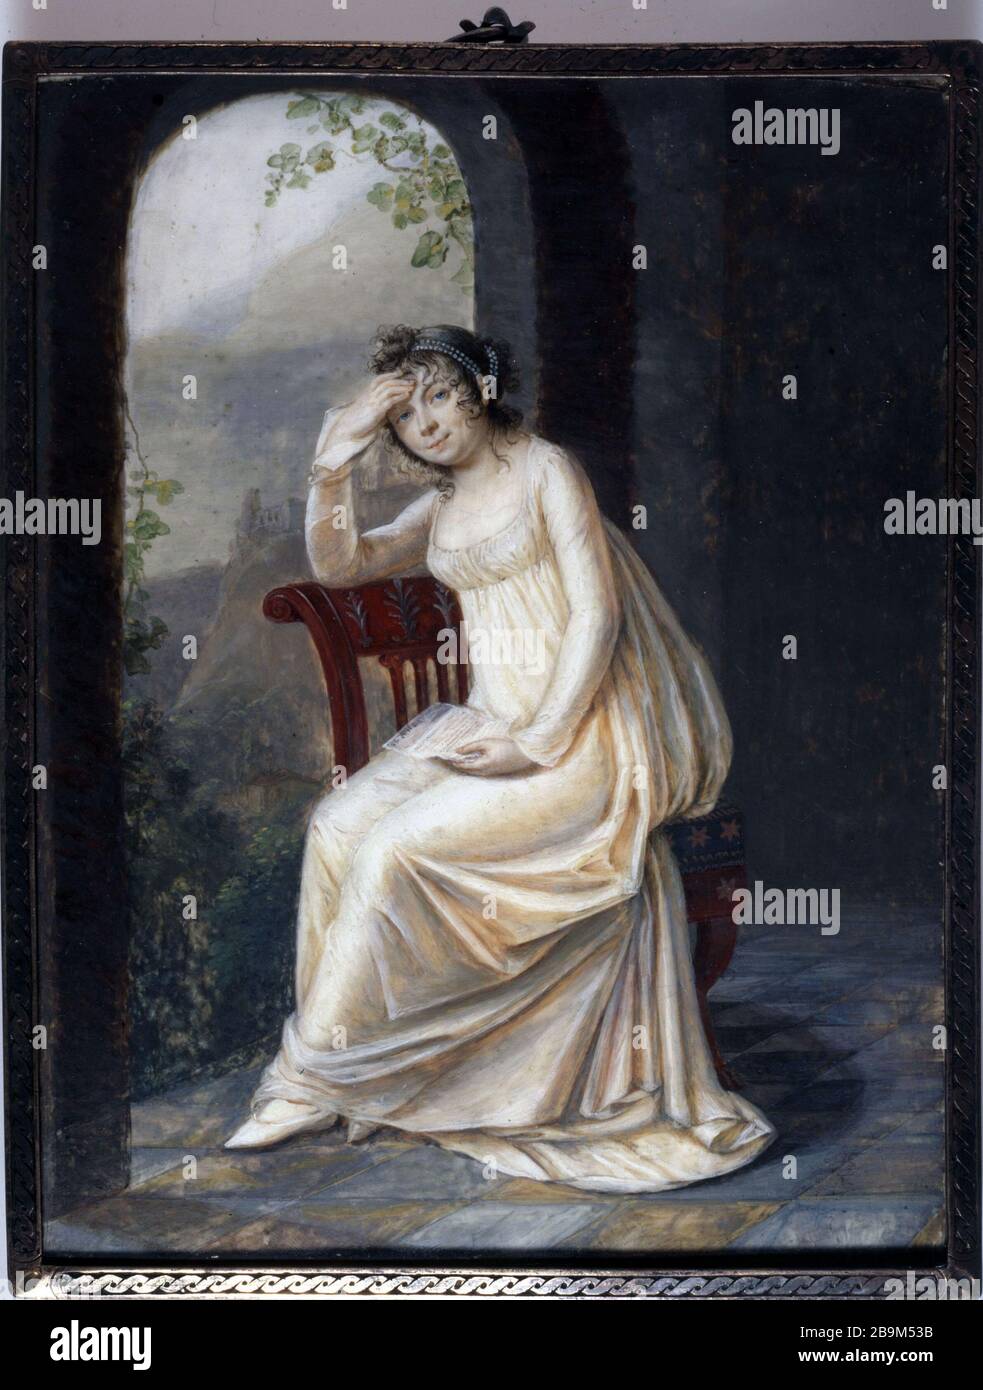 PORTRAIT IN FOOT WOMAN SITTING ON A CHAIR Antoine Berjon (attribué à, 1754-1843). 'Portrait en pied de femme assise sur une chaise devant une ouverture sur un paysage escarpé, tenant une lettre, miniature rectangulaire dans un cadre à monture en métal à motif de cordelette vers 1800'. Aquarelle, gouache et huile sur ivoire. Paris, musée Cognacq-Jay. Stock Photo